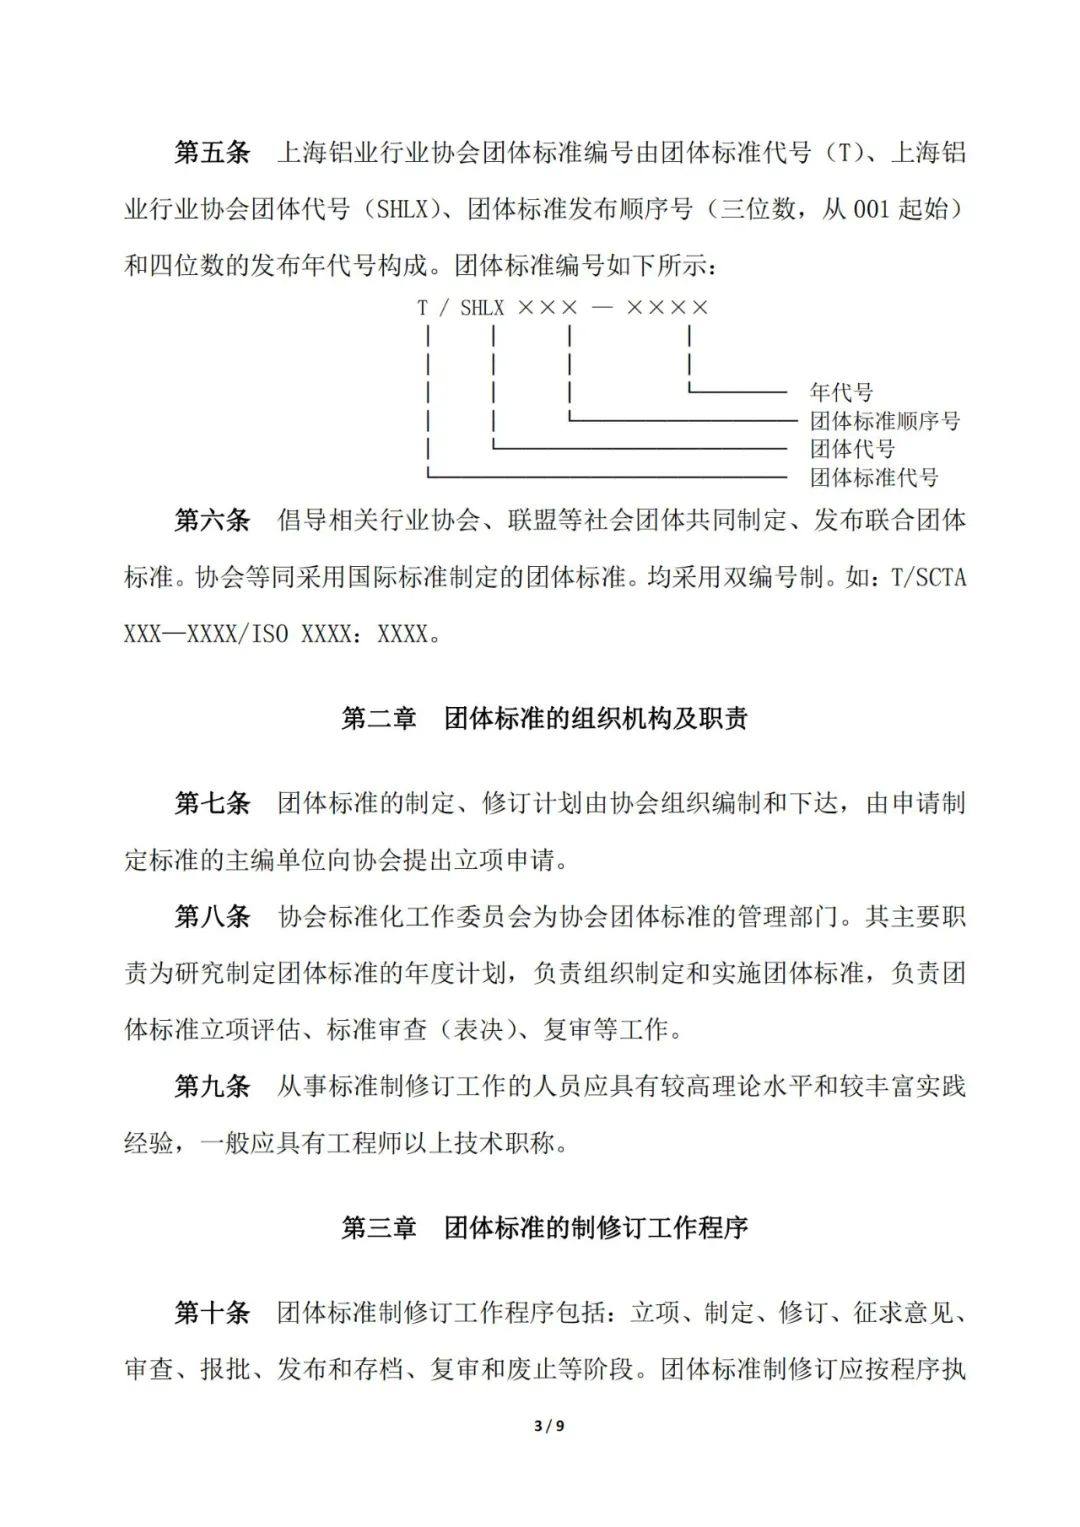 關於發布《上海鋁業行業協會團體標準管理辦法》的通知